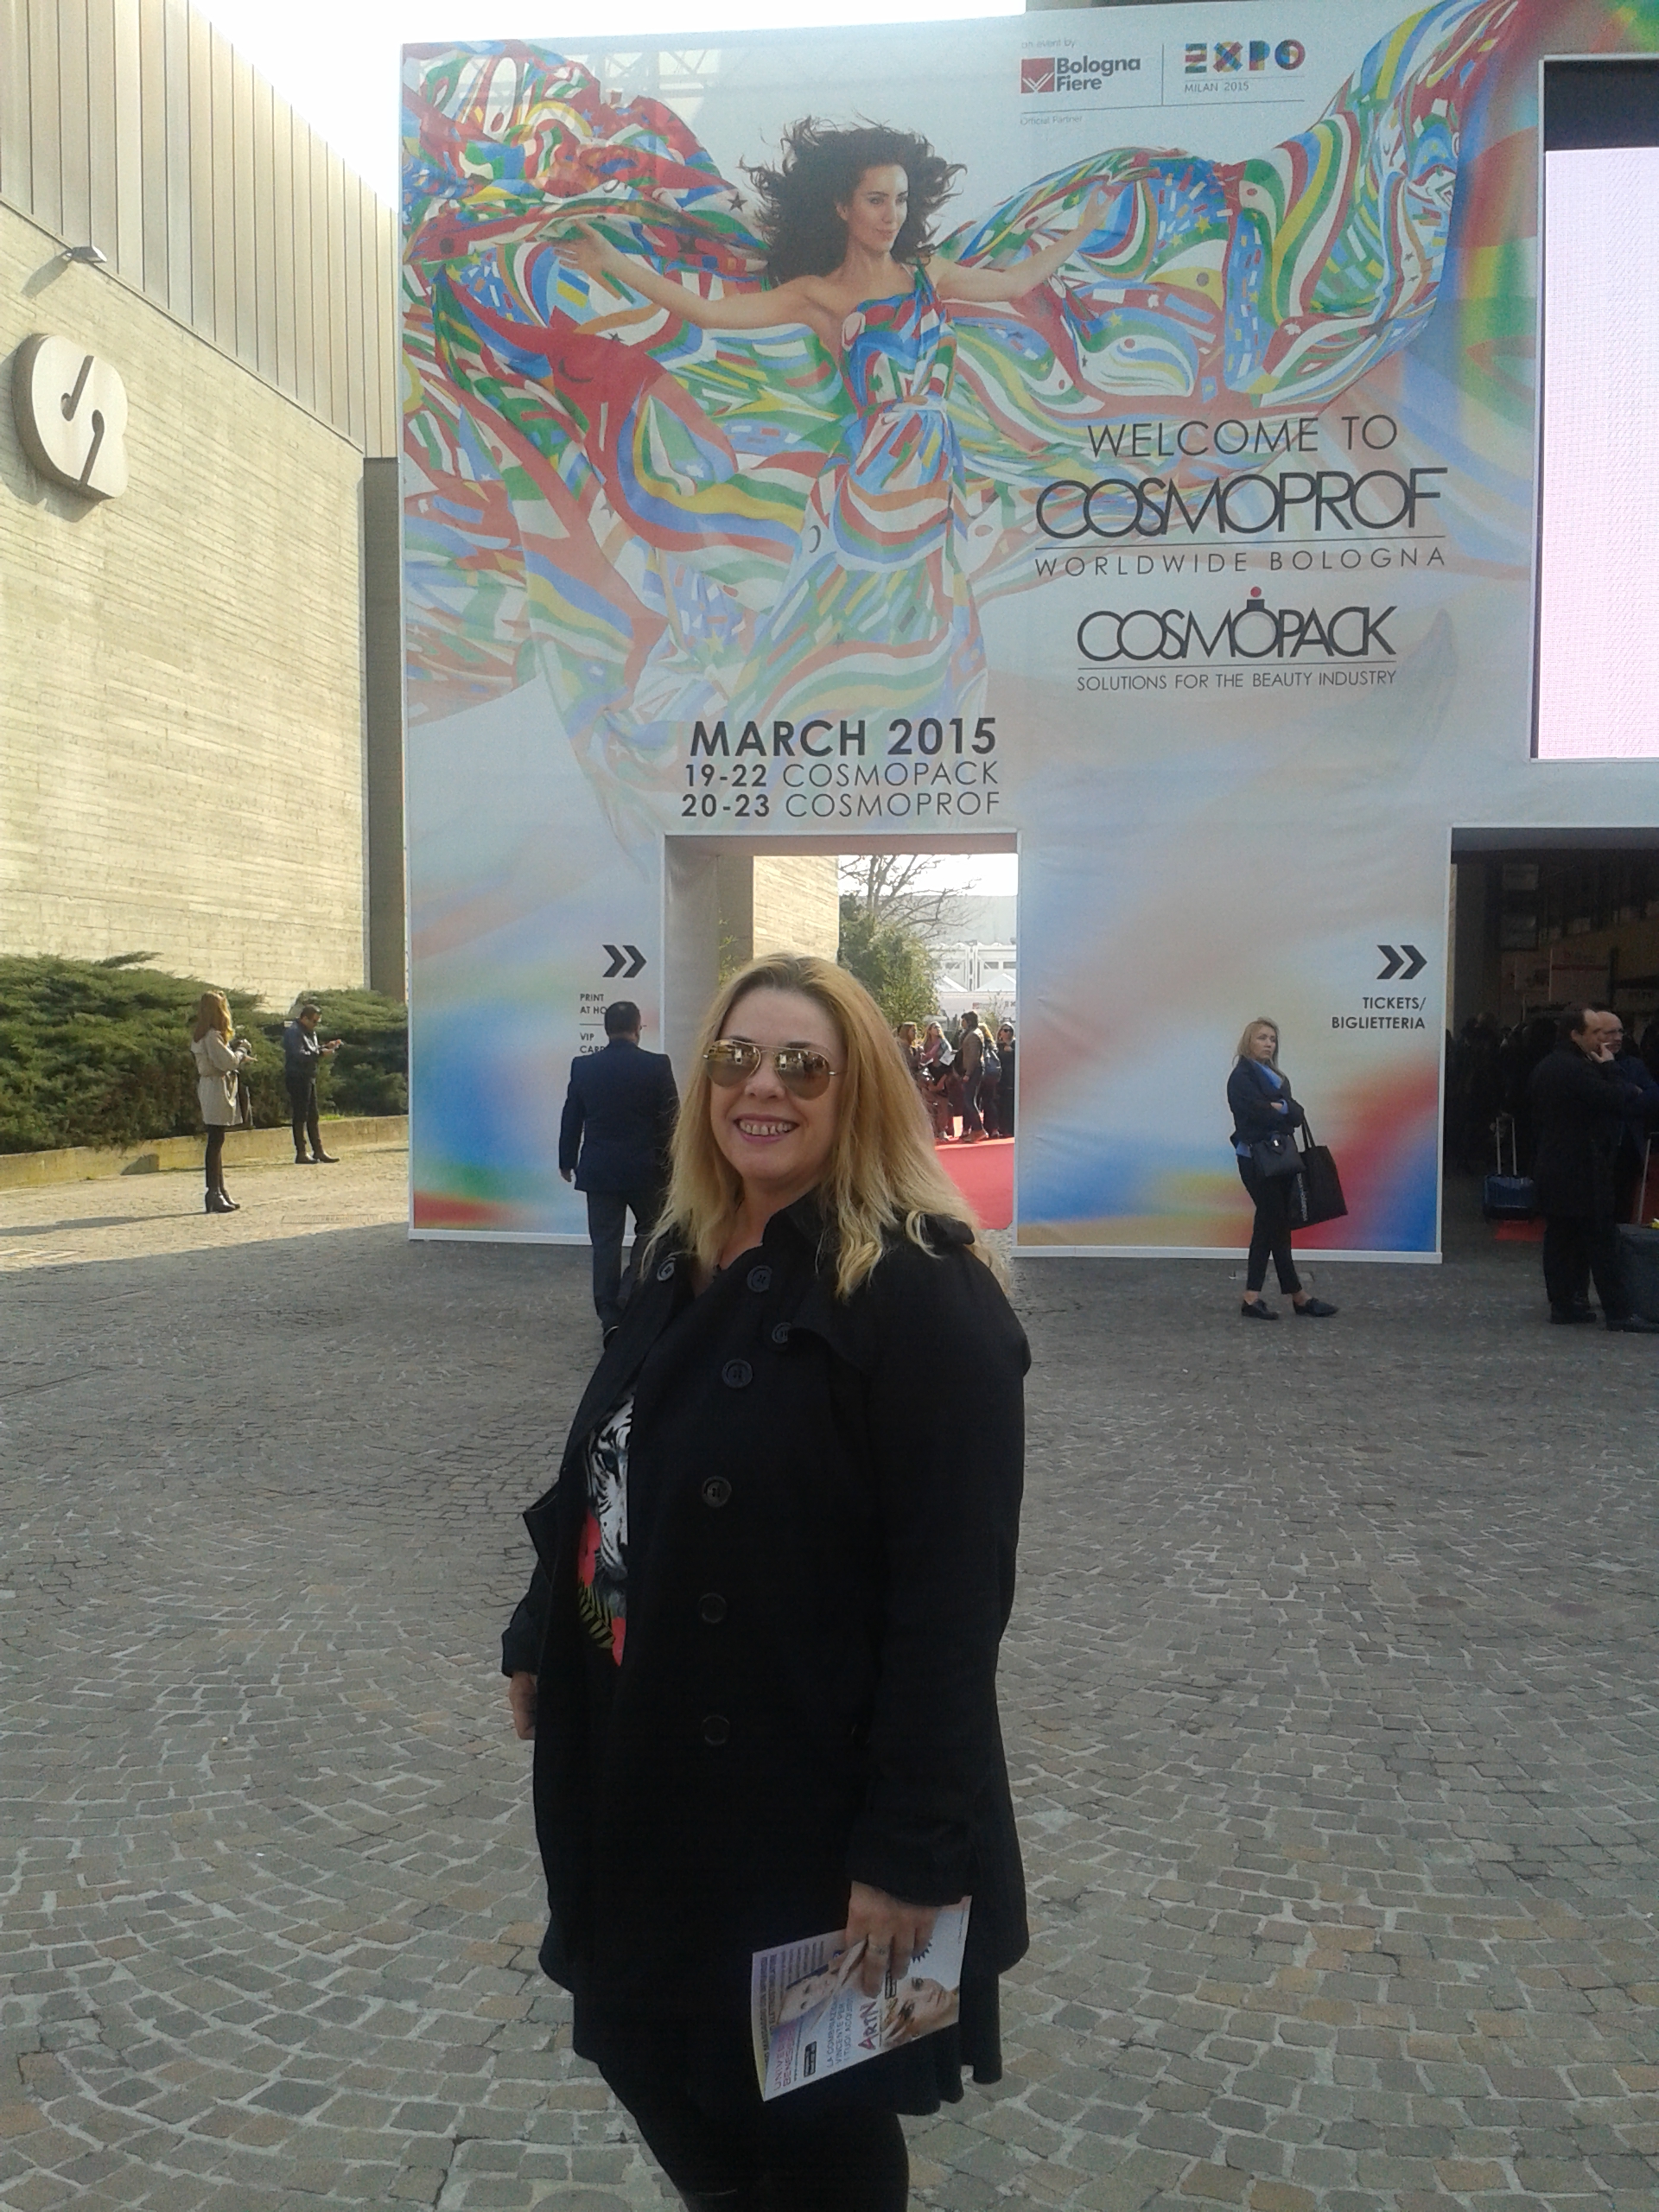 Επίσκεψη στην διεθνή έκθεση Cosmoprof στην Μπολόνια